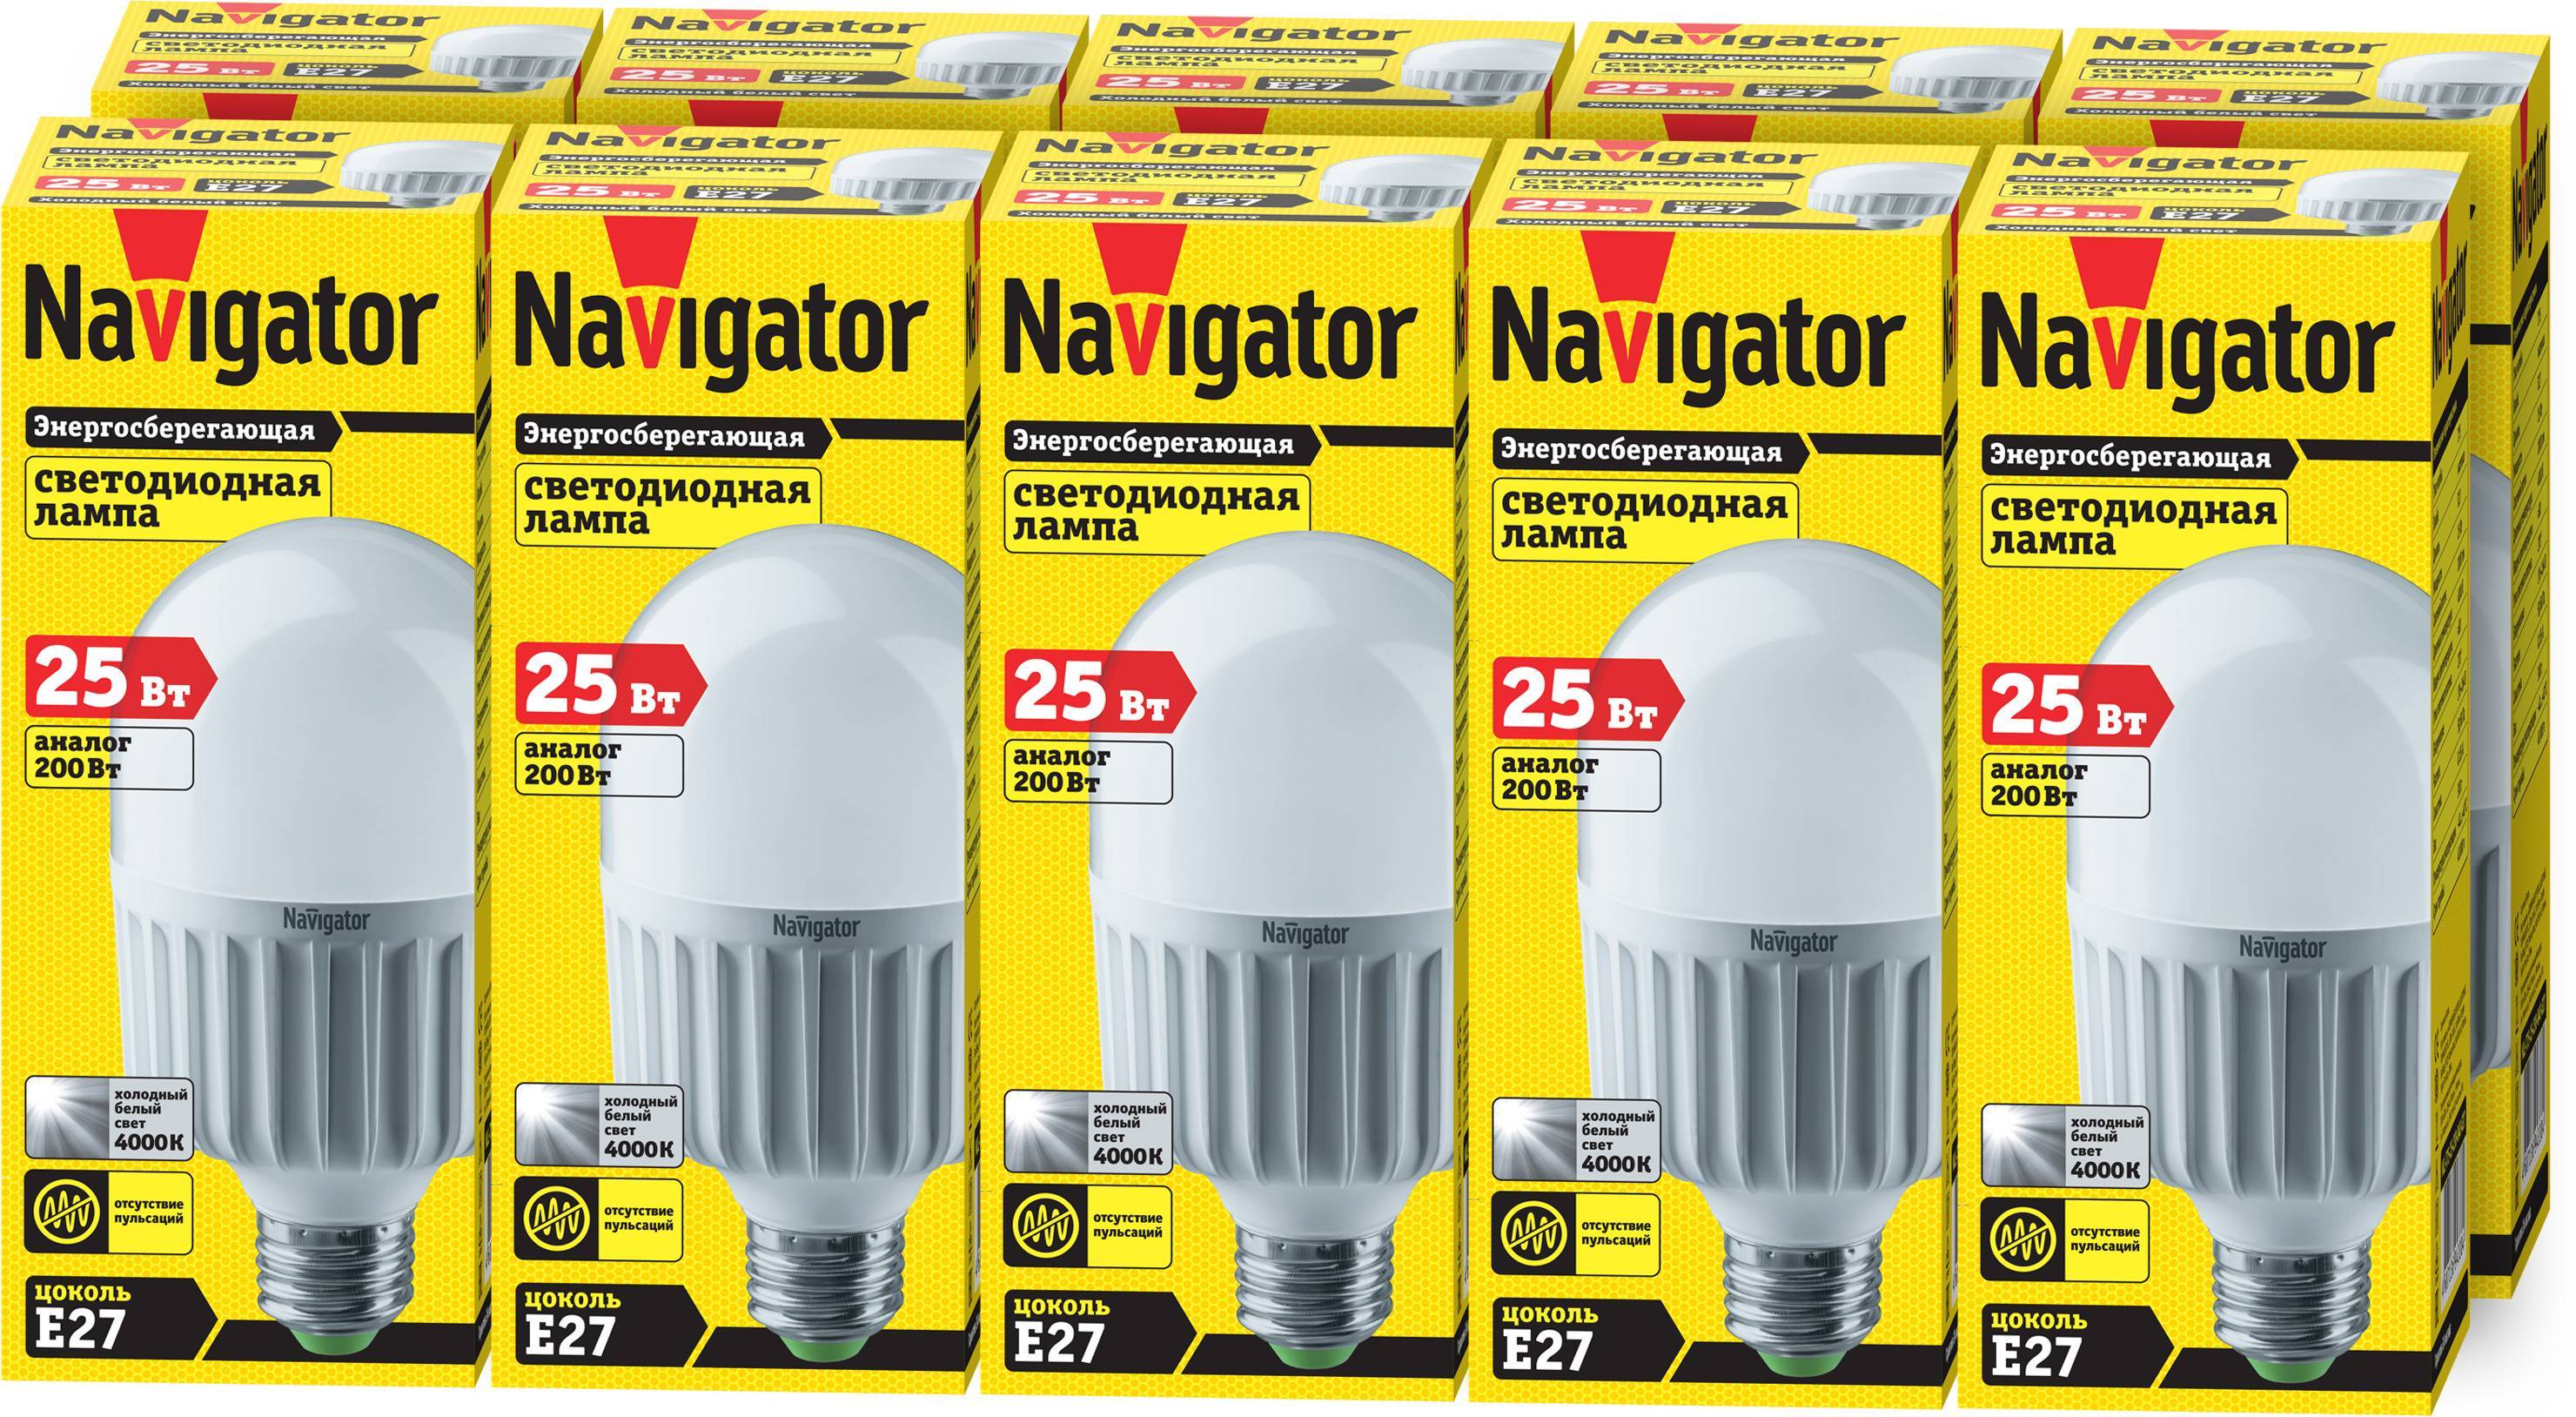 Navigator - производители светодиодных ламп - led свет